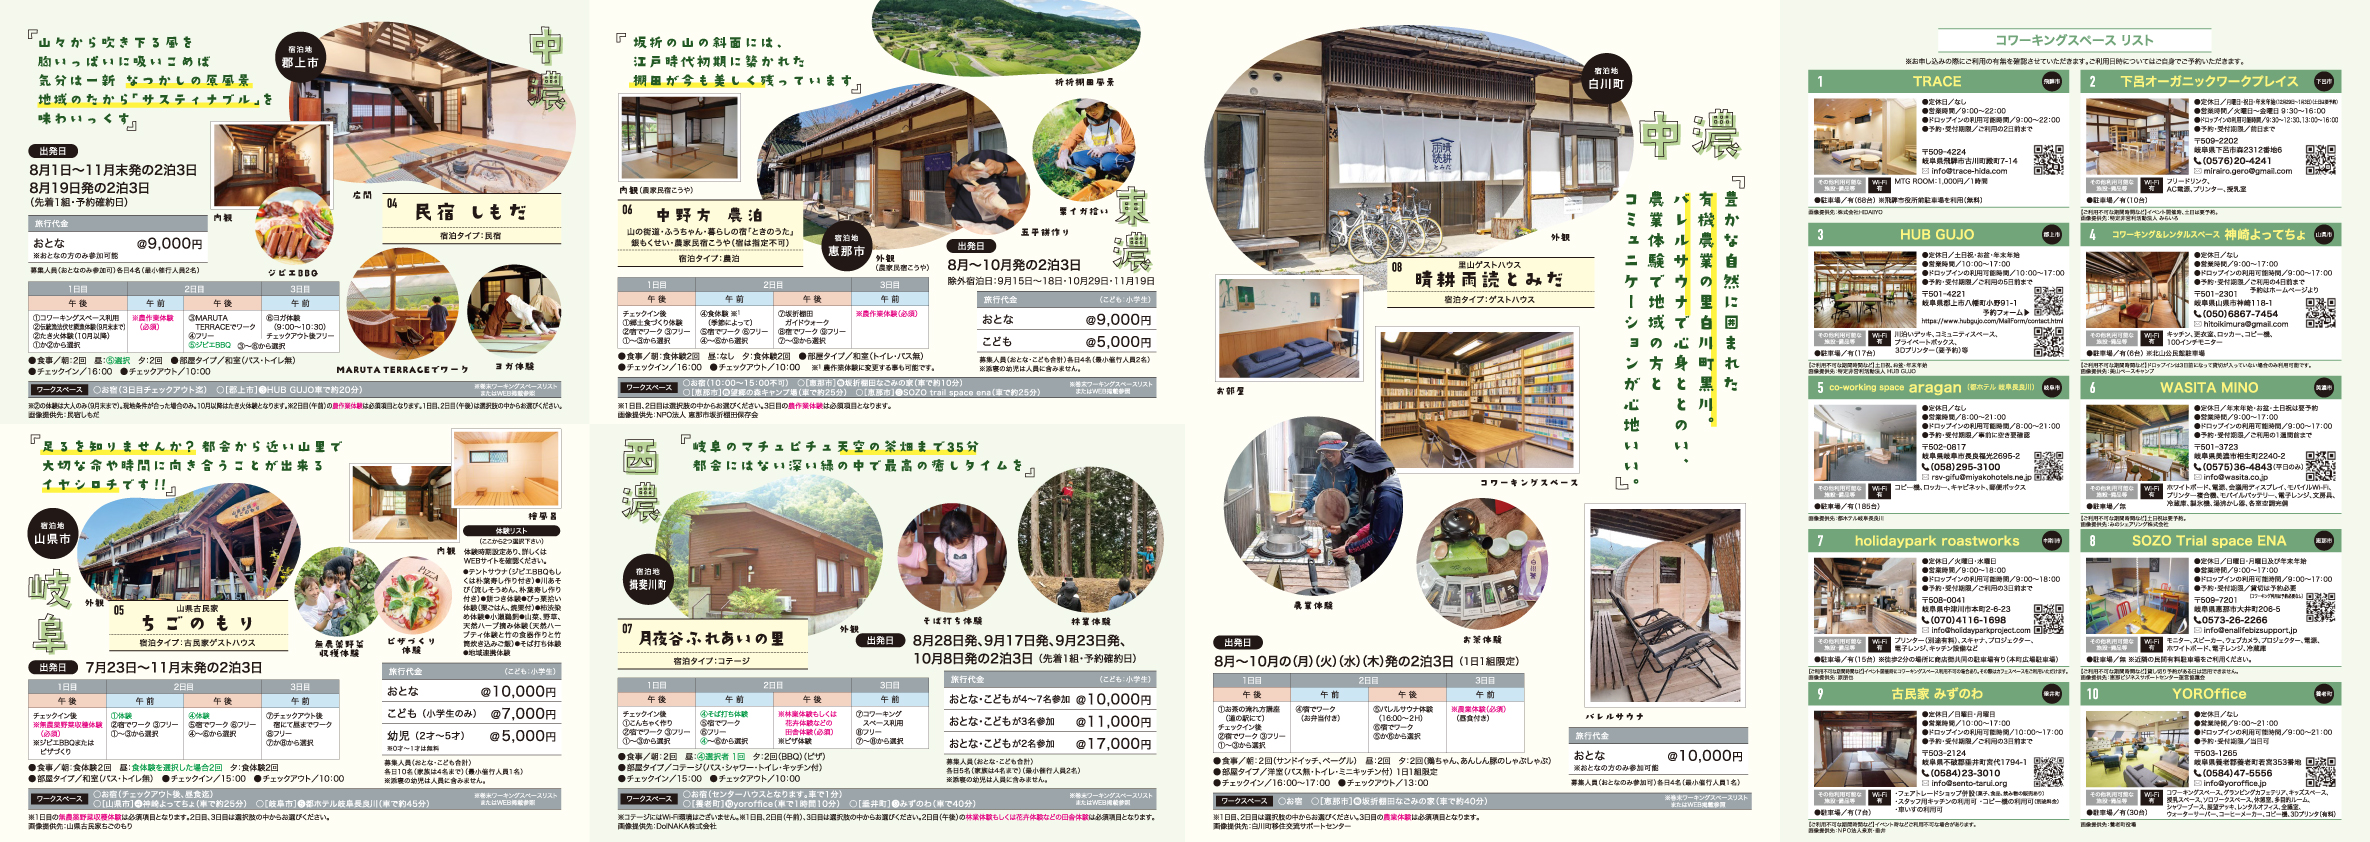 岐阜県農村ワーケーション体験ツアーのアイキャッチ画像